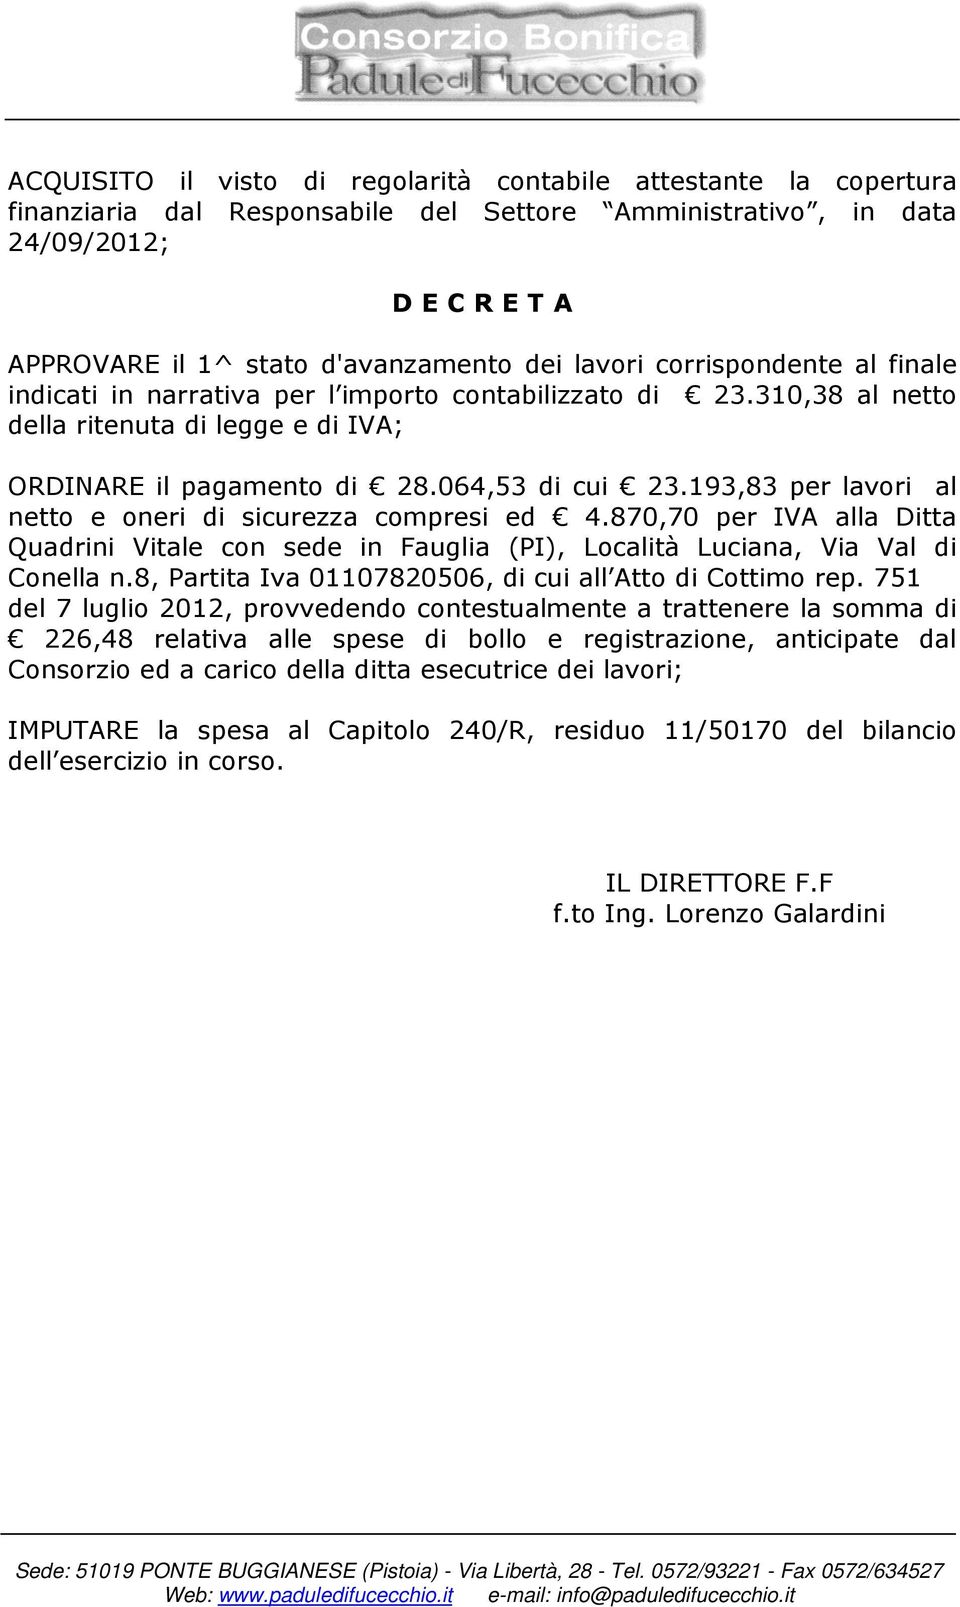 193,83 per lavori al netto e oneri di sicurezza compresi ed 4.870,70 per IVA alla Ditta Quadrini Vitale con sede in Fauglia (PI), Località Luciana, Via Val di Conella n.